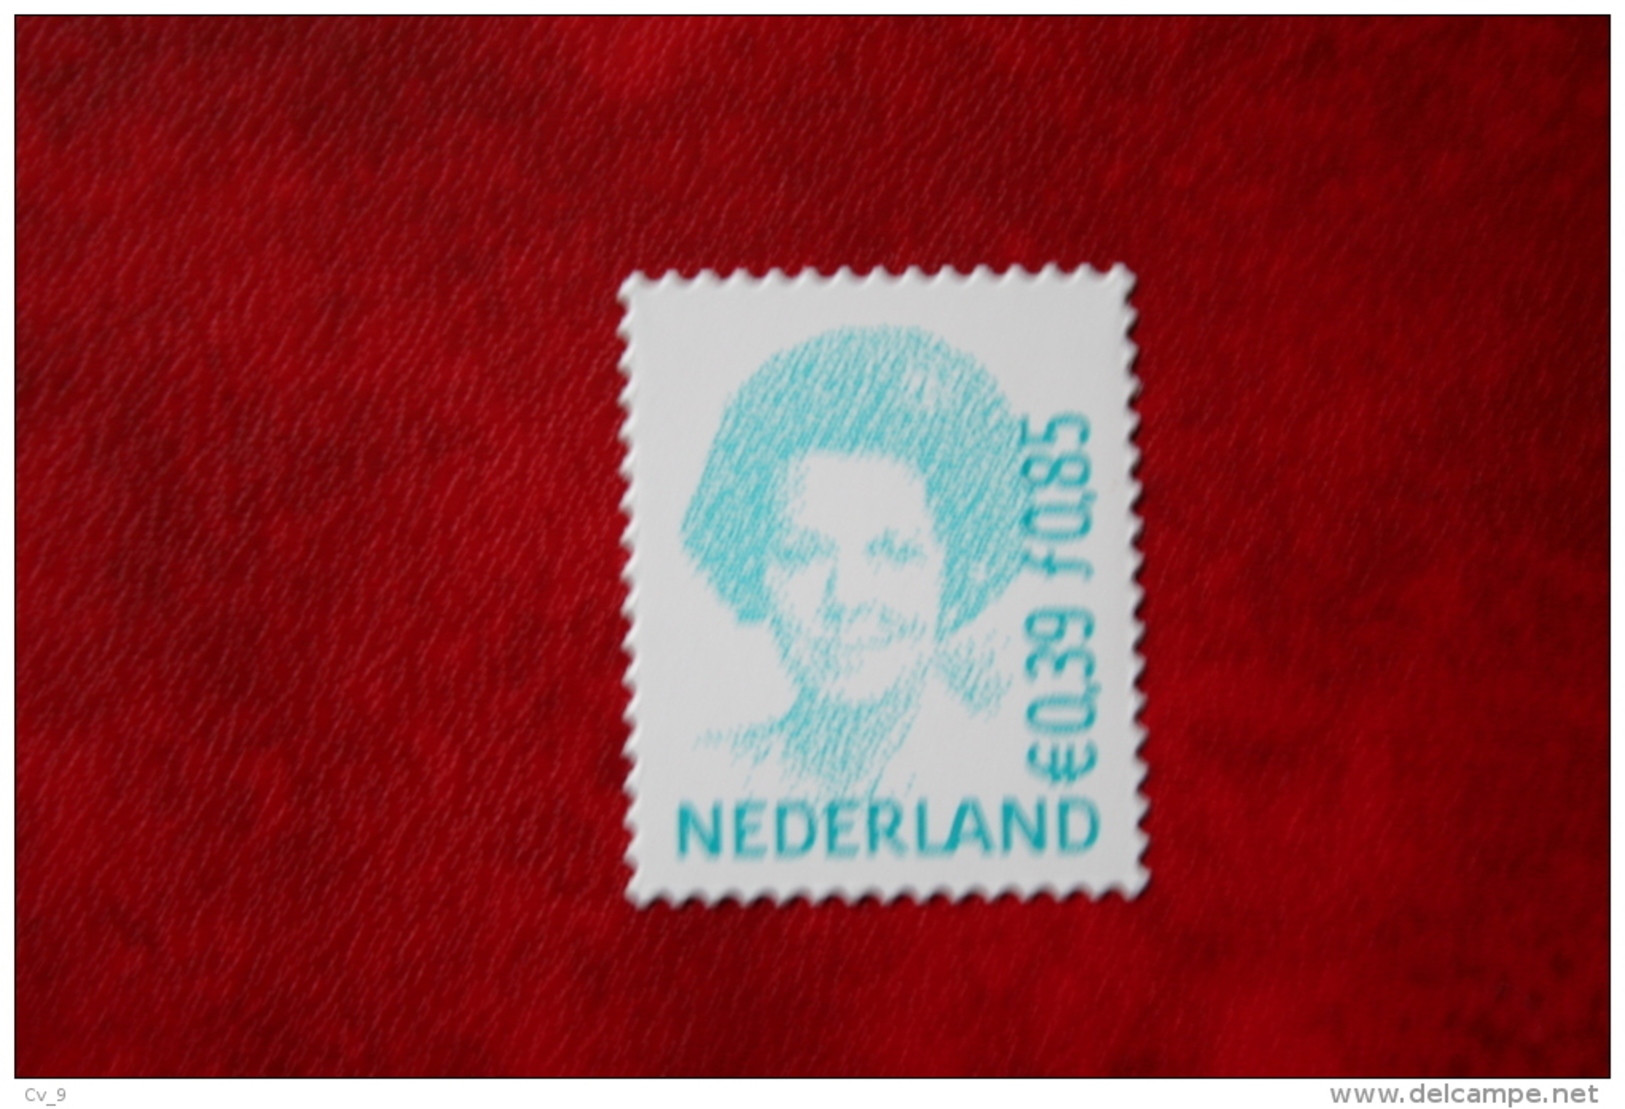 Beatrix 0,85 Gld 0,39 Euro Gestanst ; NVPH 1984 (Mi 1907) ; 2001 POSTFRIS / MNH ** NEDERLAND / NIEDERLANDE / NETHERLANDS - Nuovi